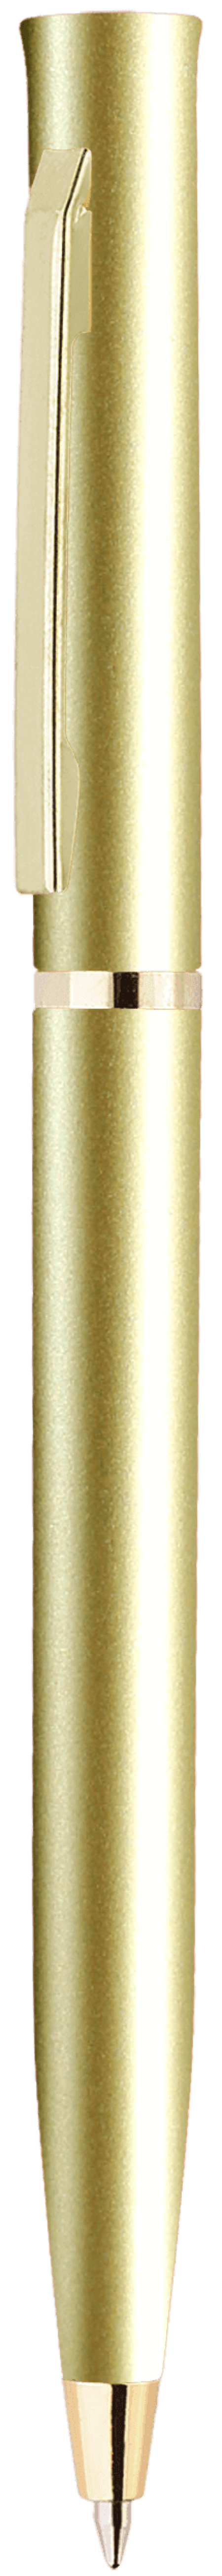 Ручка EUROPA GOLD Золотистая 2023.17